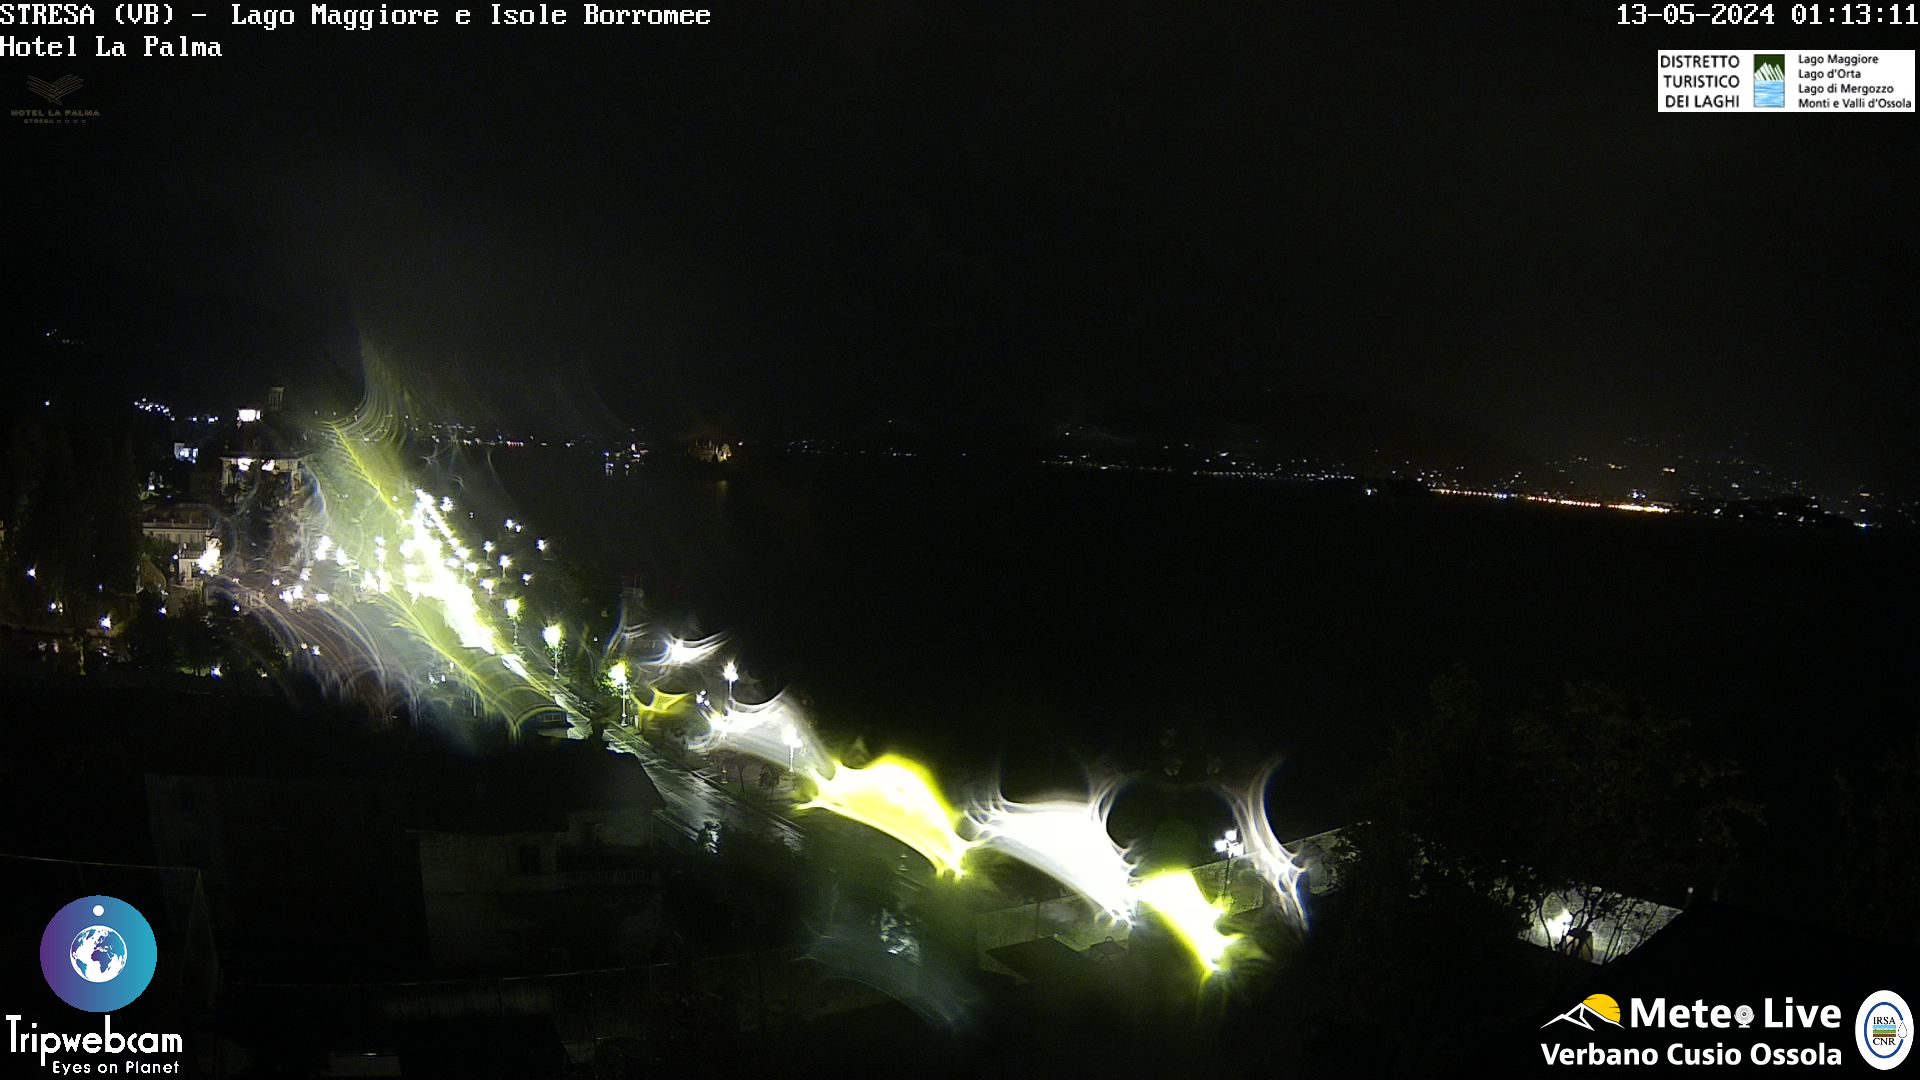 Stresa (Lago Maggiore) Di. 02:18